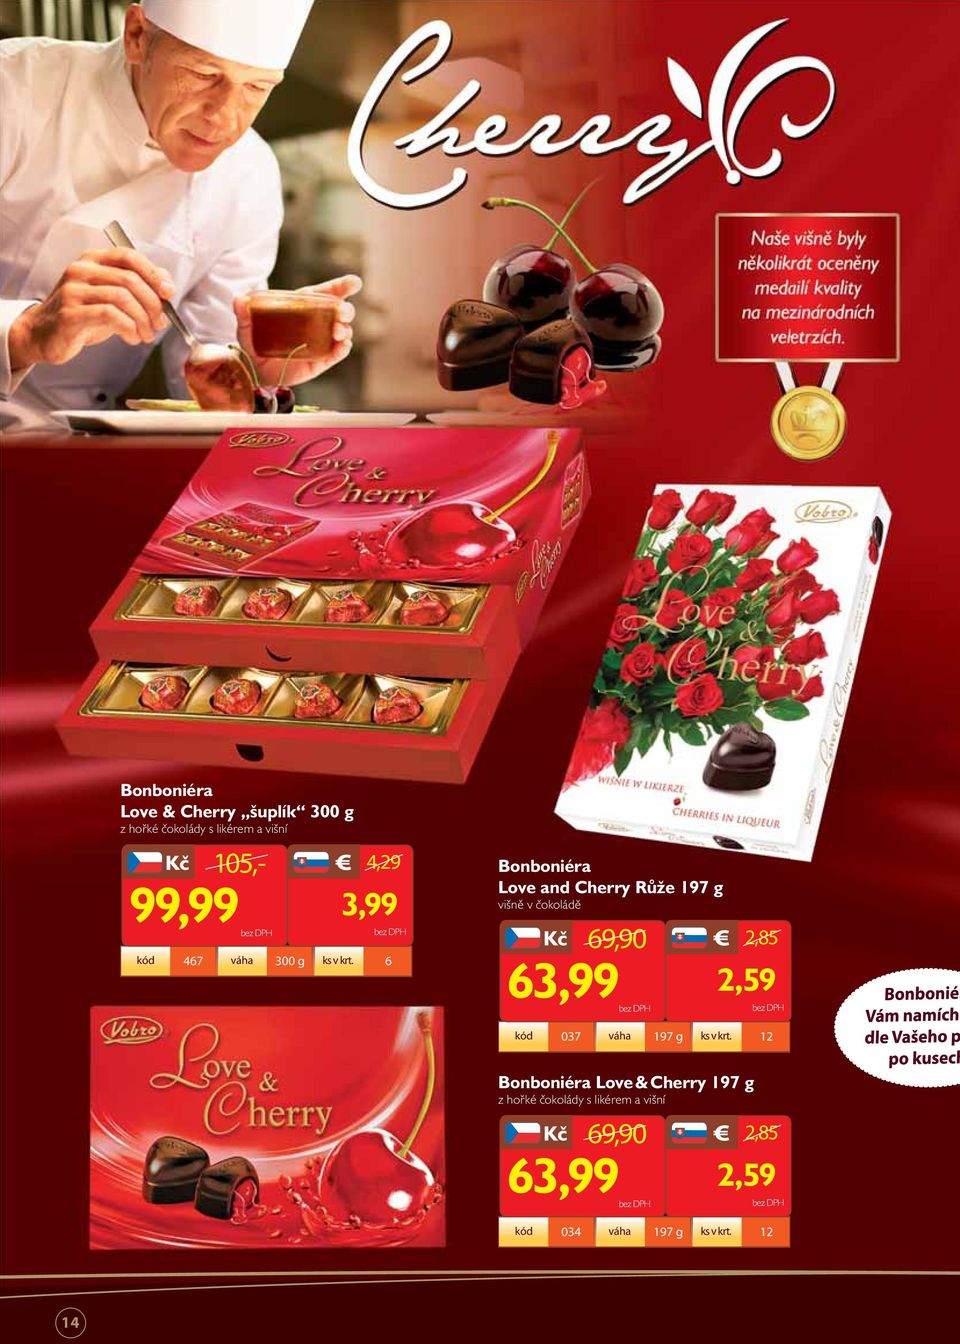 6 Bonboniéra Love and Cherry Růže 197 g višně v čokoládě 69,90 2,85 63,99 2,59 kód 037